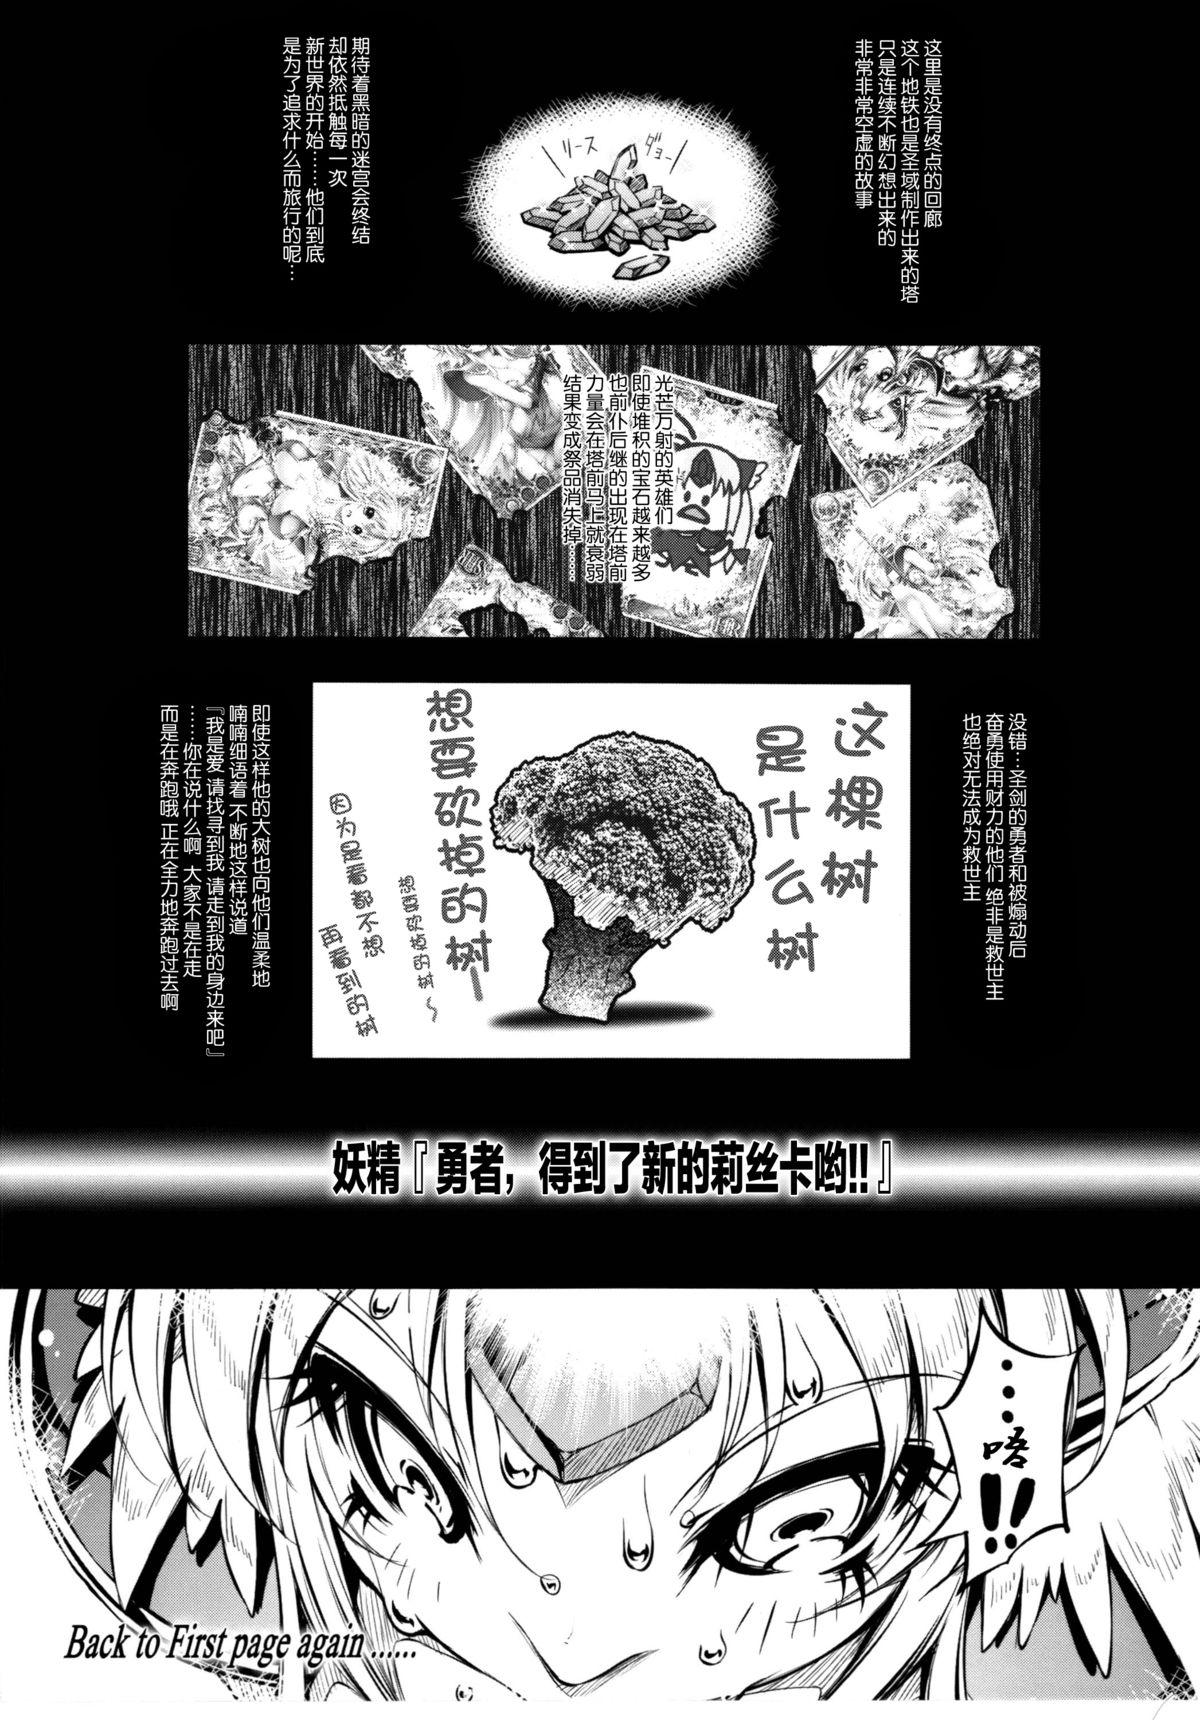 Masseuse Minasan COM ni Juuman-nin no User ga Imasu. - Seiken densetsu 3 Young Men - Page 12